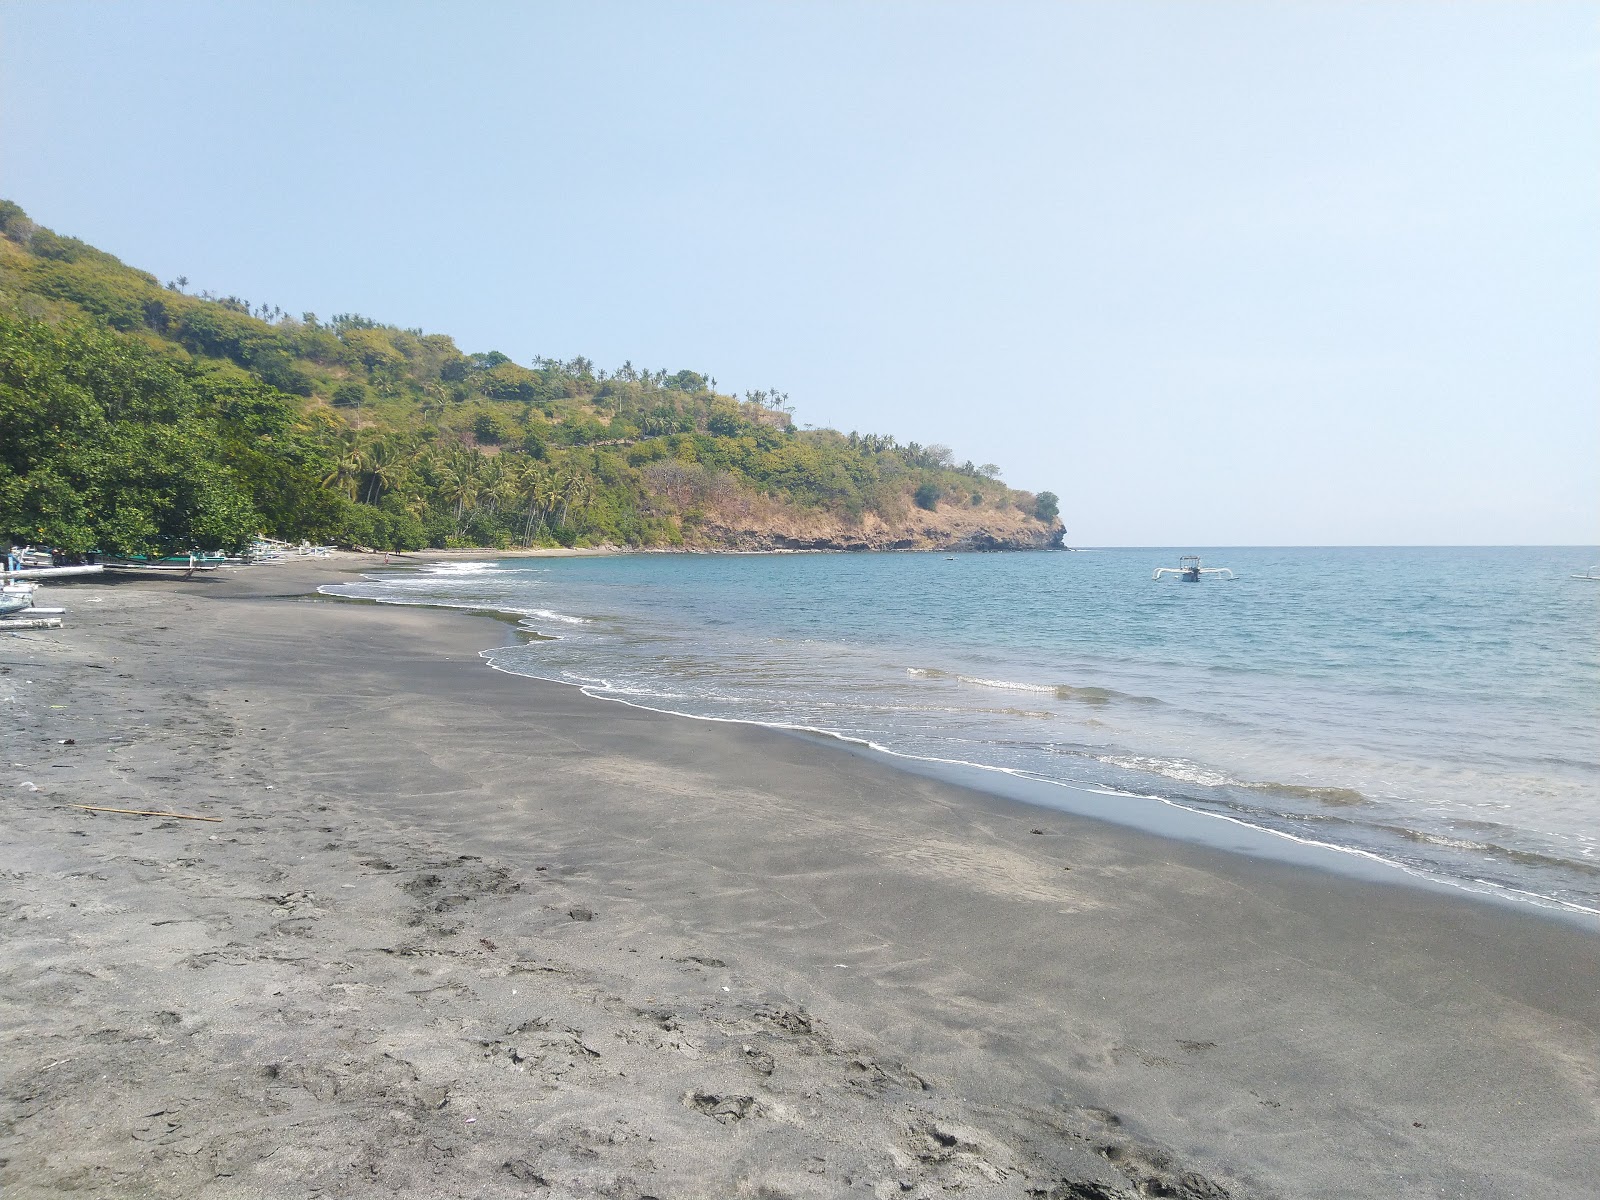 Fotografie cu Pantai malimbu cu o suprafață de nisip strălucitor